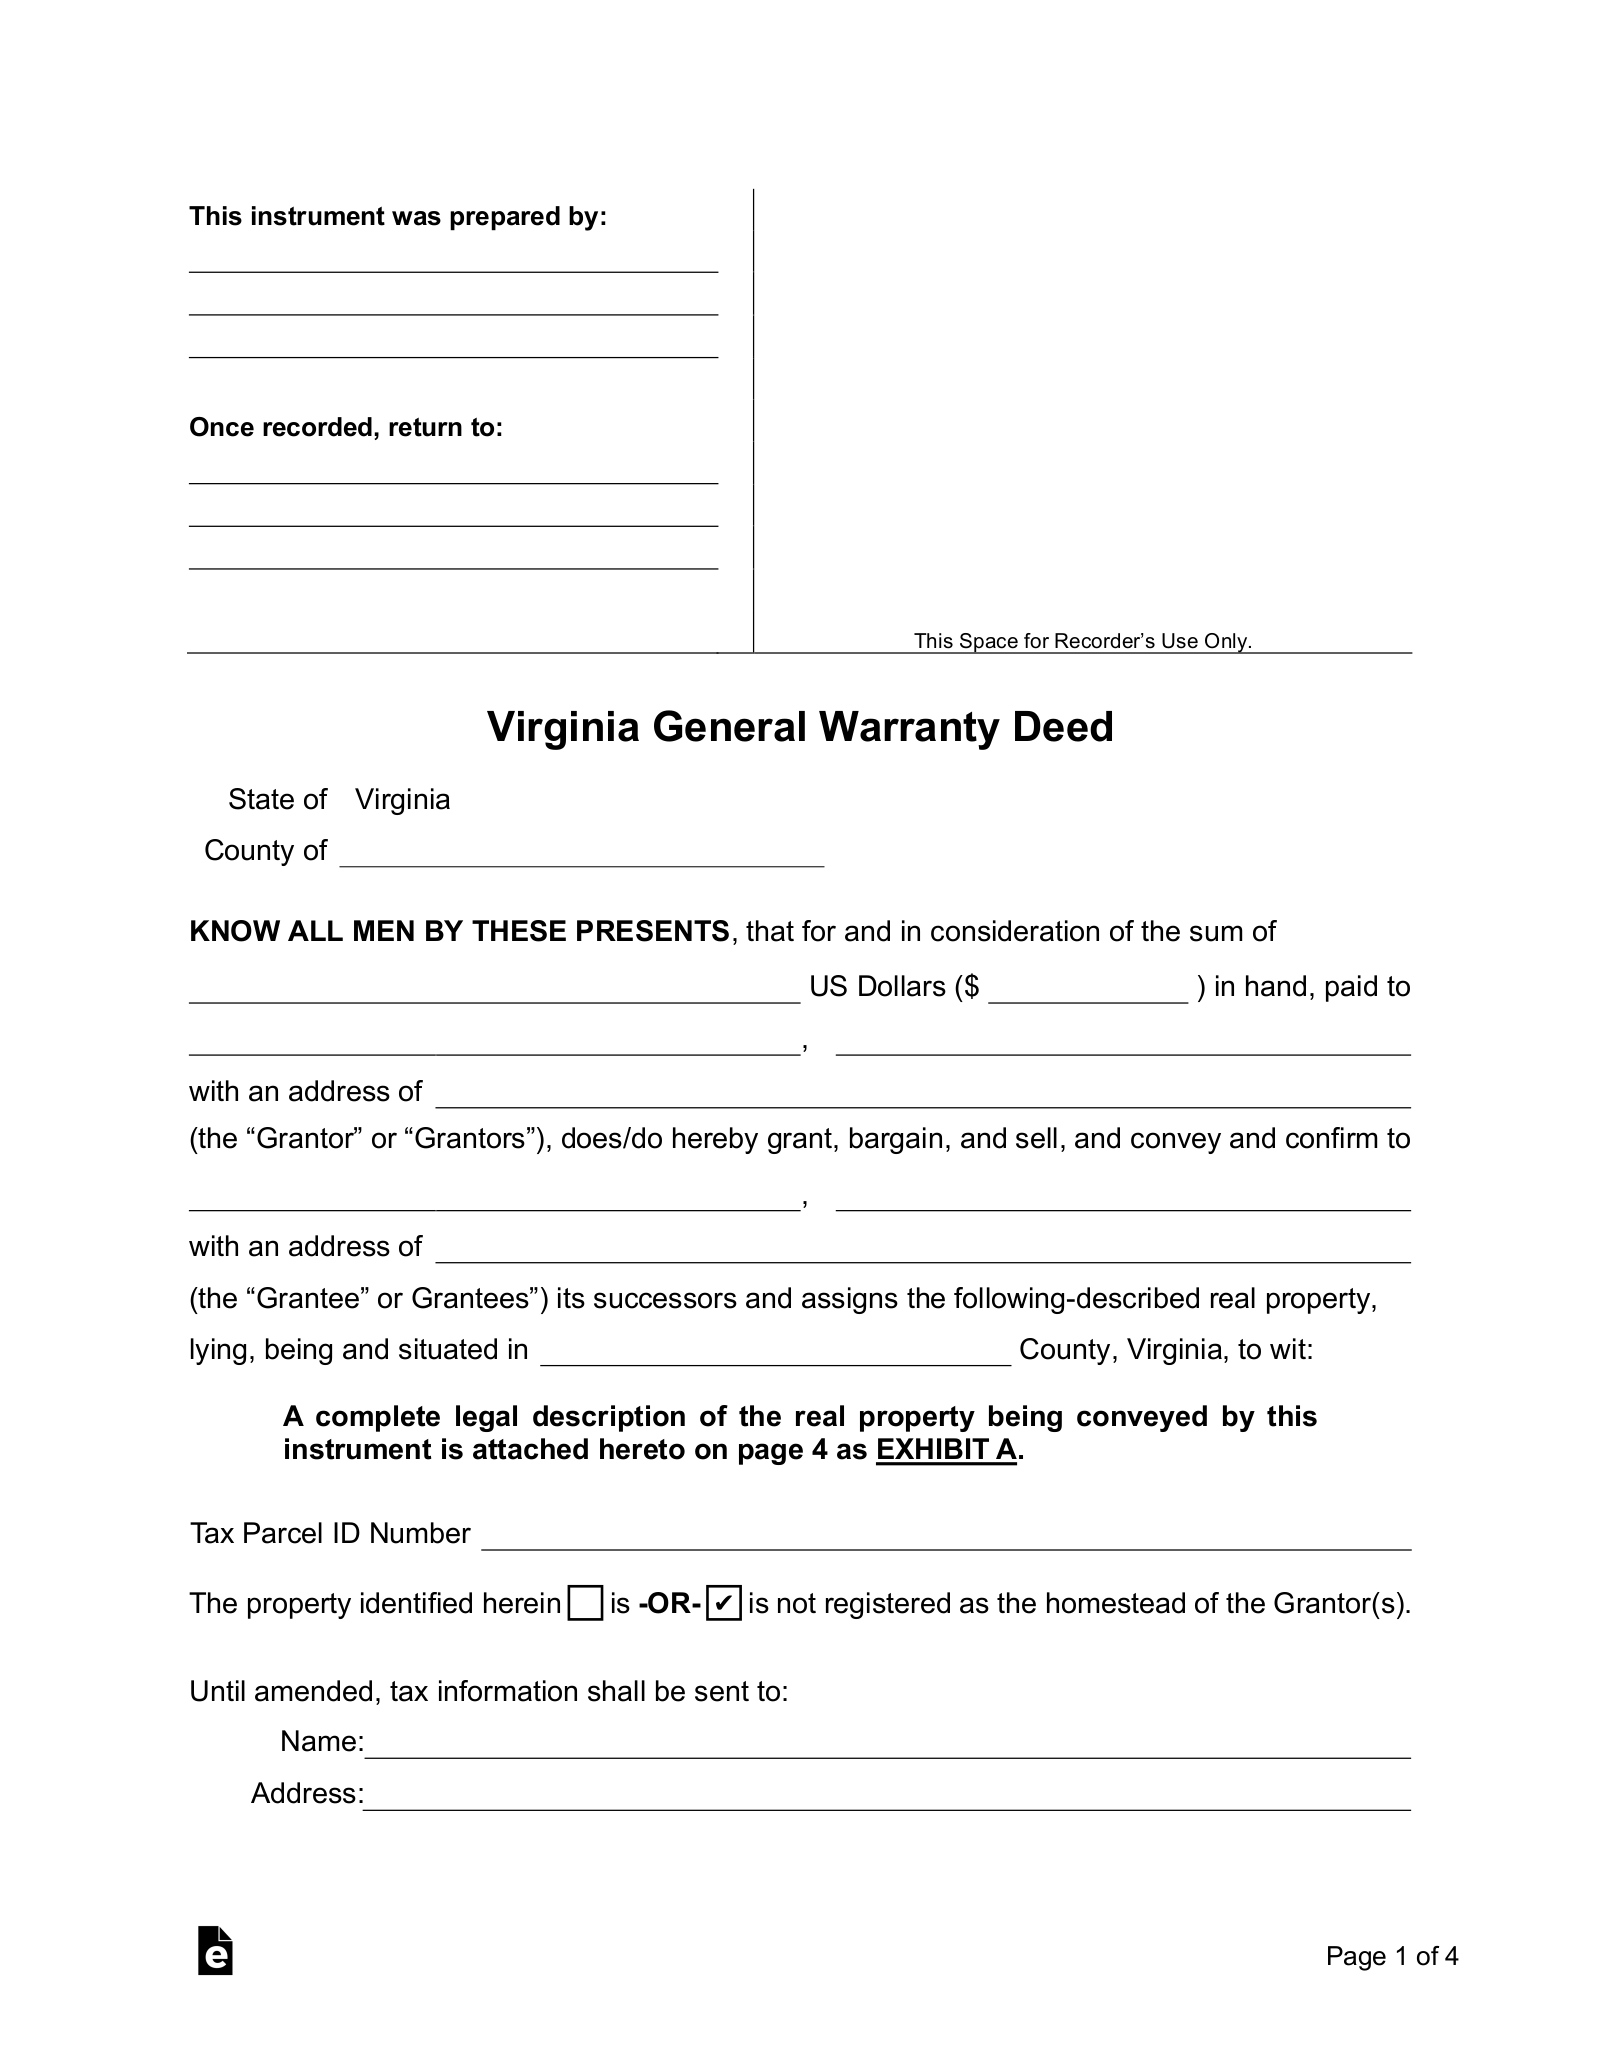 Virginia General Warranty Deed Form